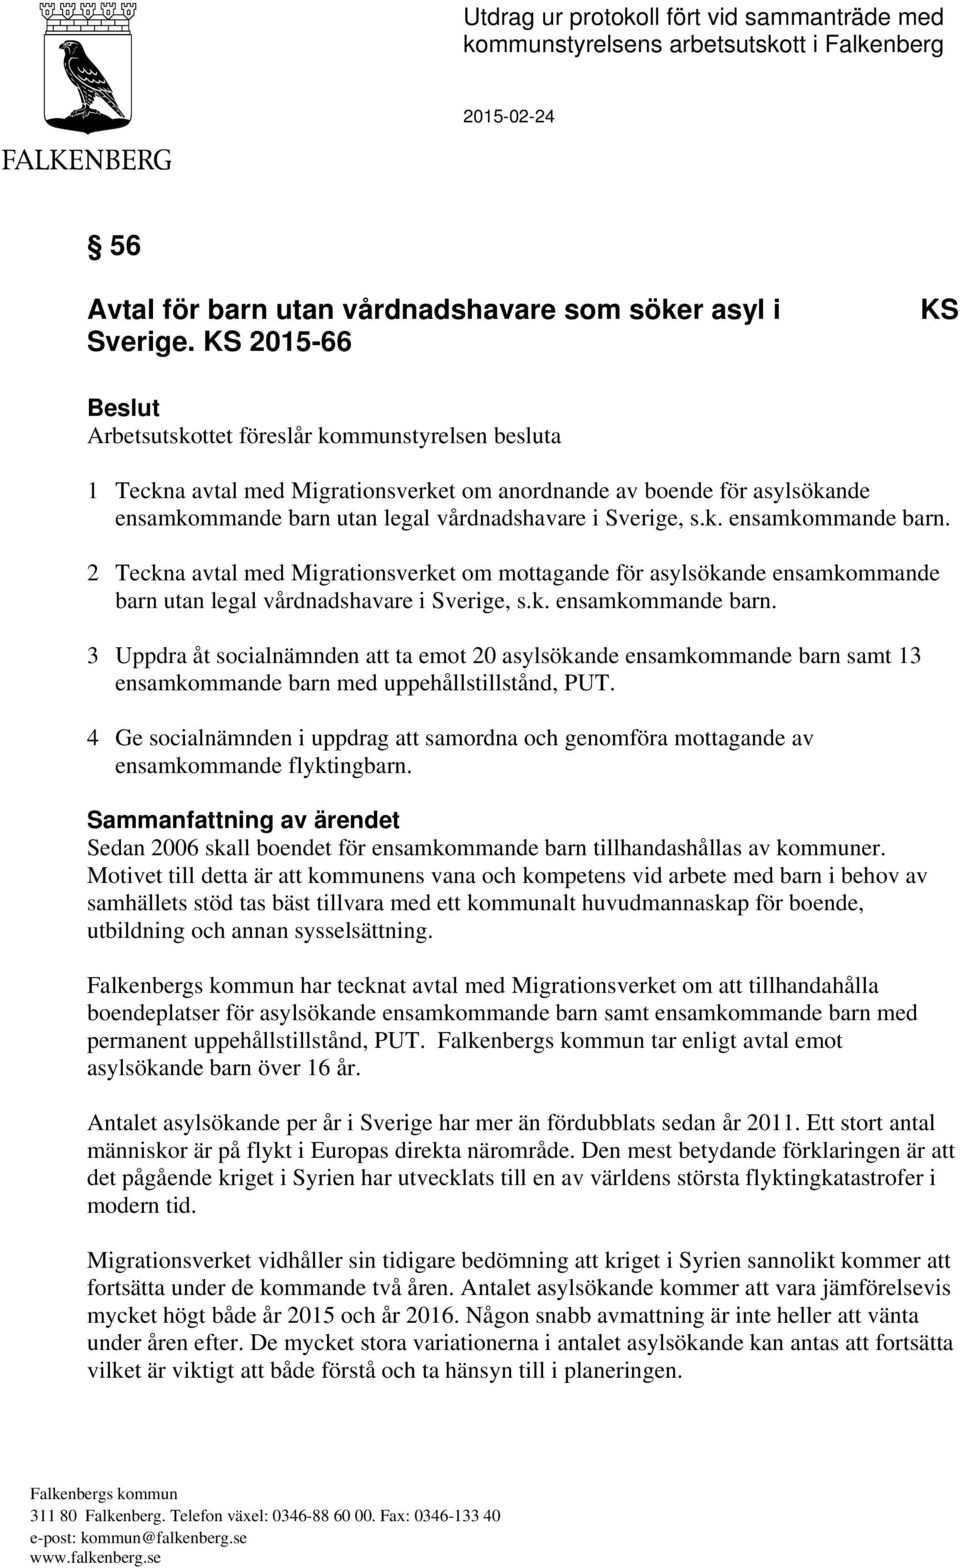 Sverige, s.k. ensamkommande barn. 2 Teckna avtal med Migrationsverket om mottagande för asylsökande ensamkommande barn utan legal vårdnadshavare i Sverige, s.k. ensamkommande barn. 3 Uppdra åt socialnämnden att ta emot 20 asylsökande ensamkommande barn samt 13 ensamkommande barn med uppehållstillstånd, PUT.